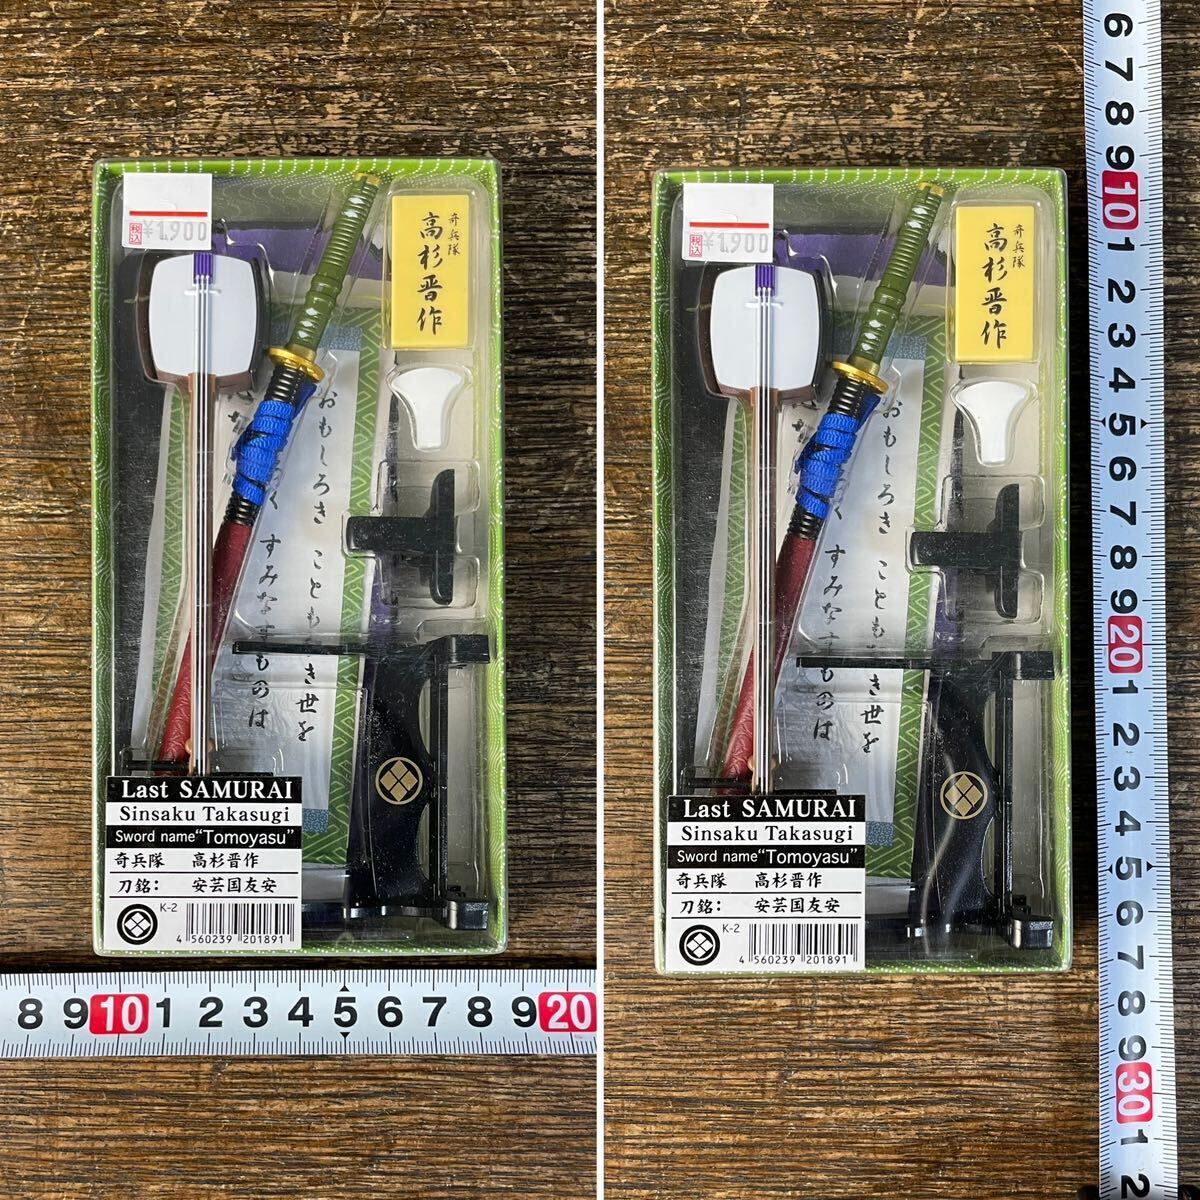  высота криптомерия . произведение Япония название меч серии .. ось комплект Last SAMURAI миниатюра фигурка меч shamisen ... Samurai Meister Japan samurai 1-2